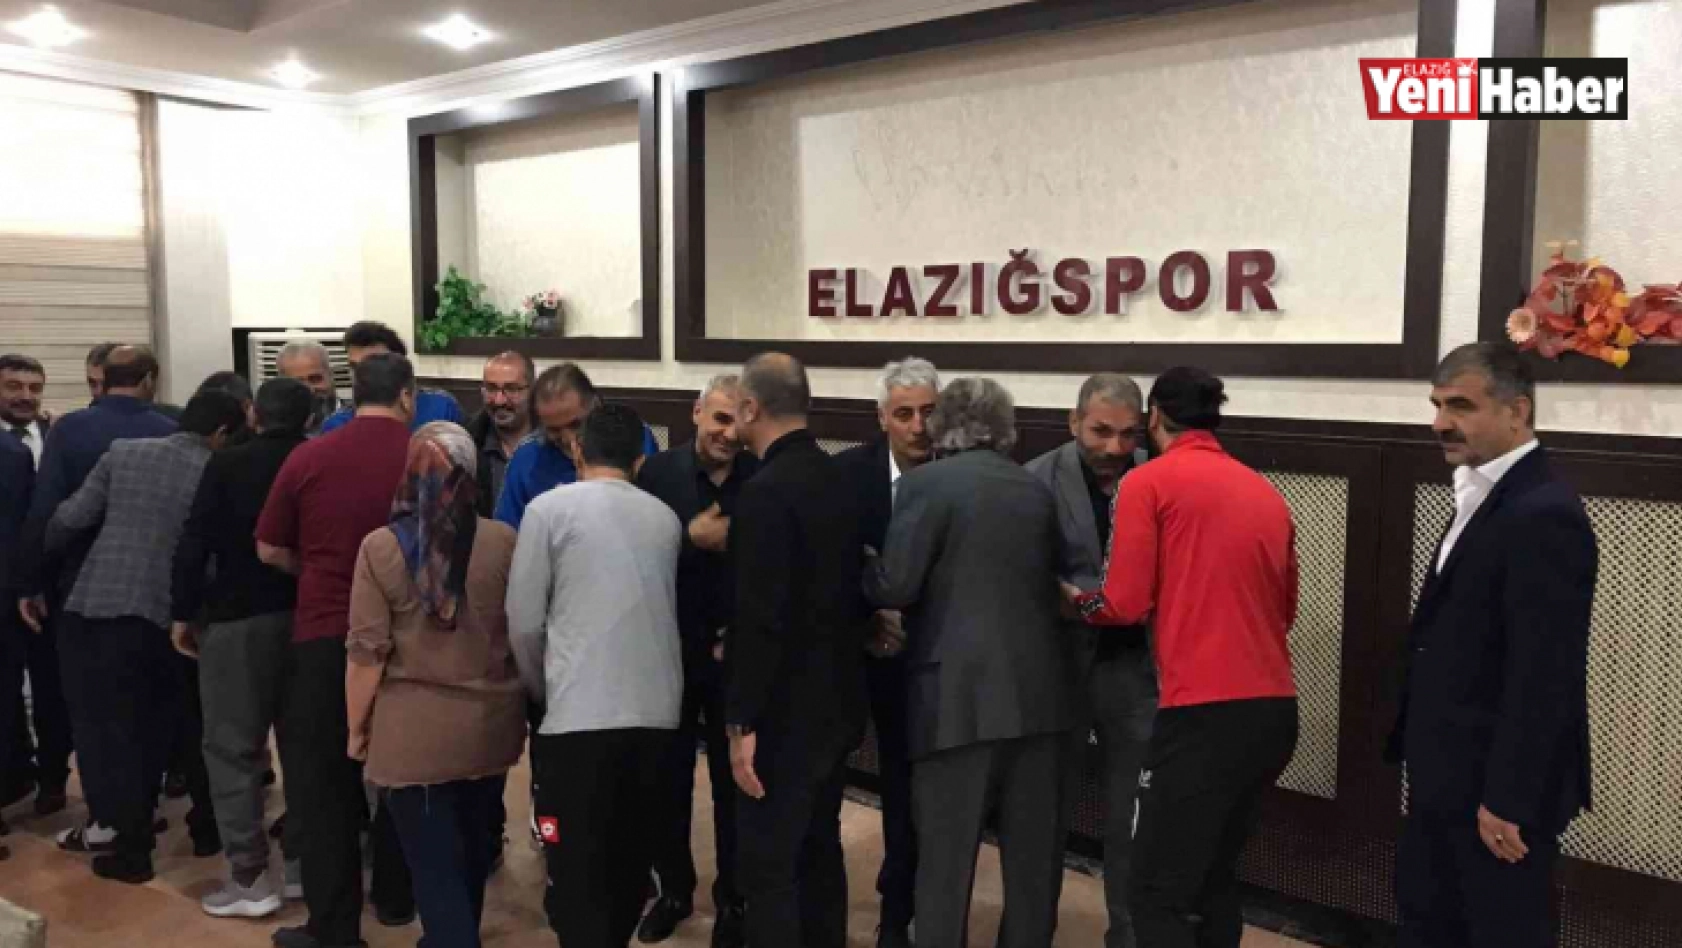 Elazığspor'da bayramlaşma töreni yapıldı